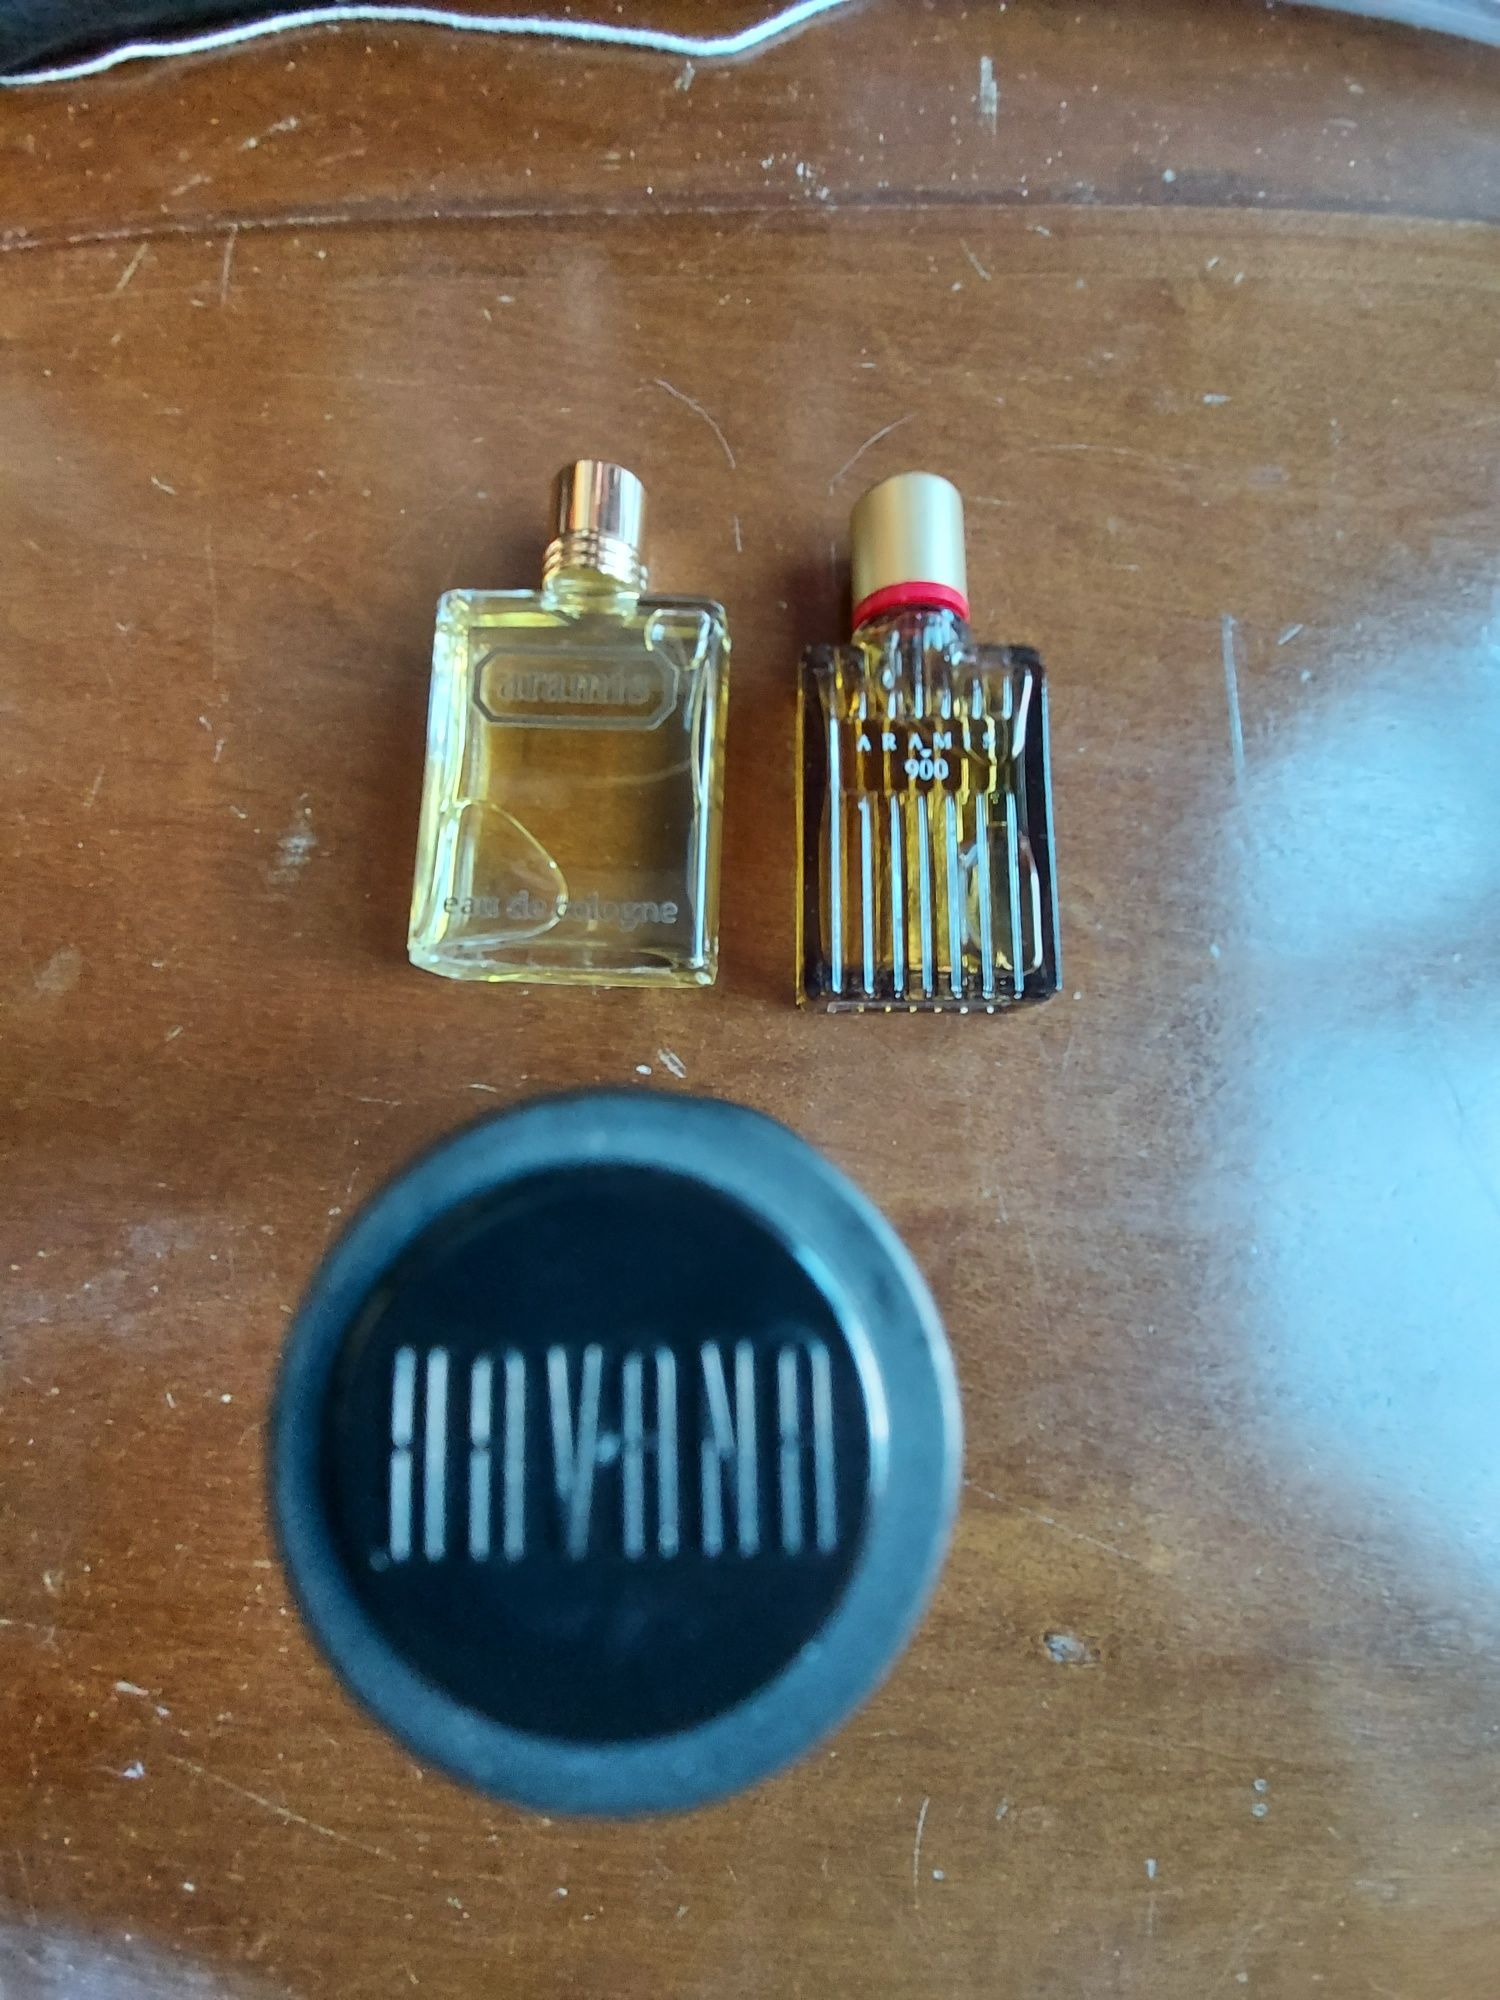 Miniaturas de perfumes, anos 90